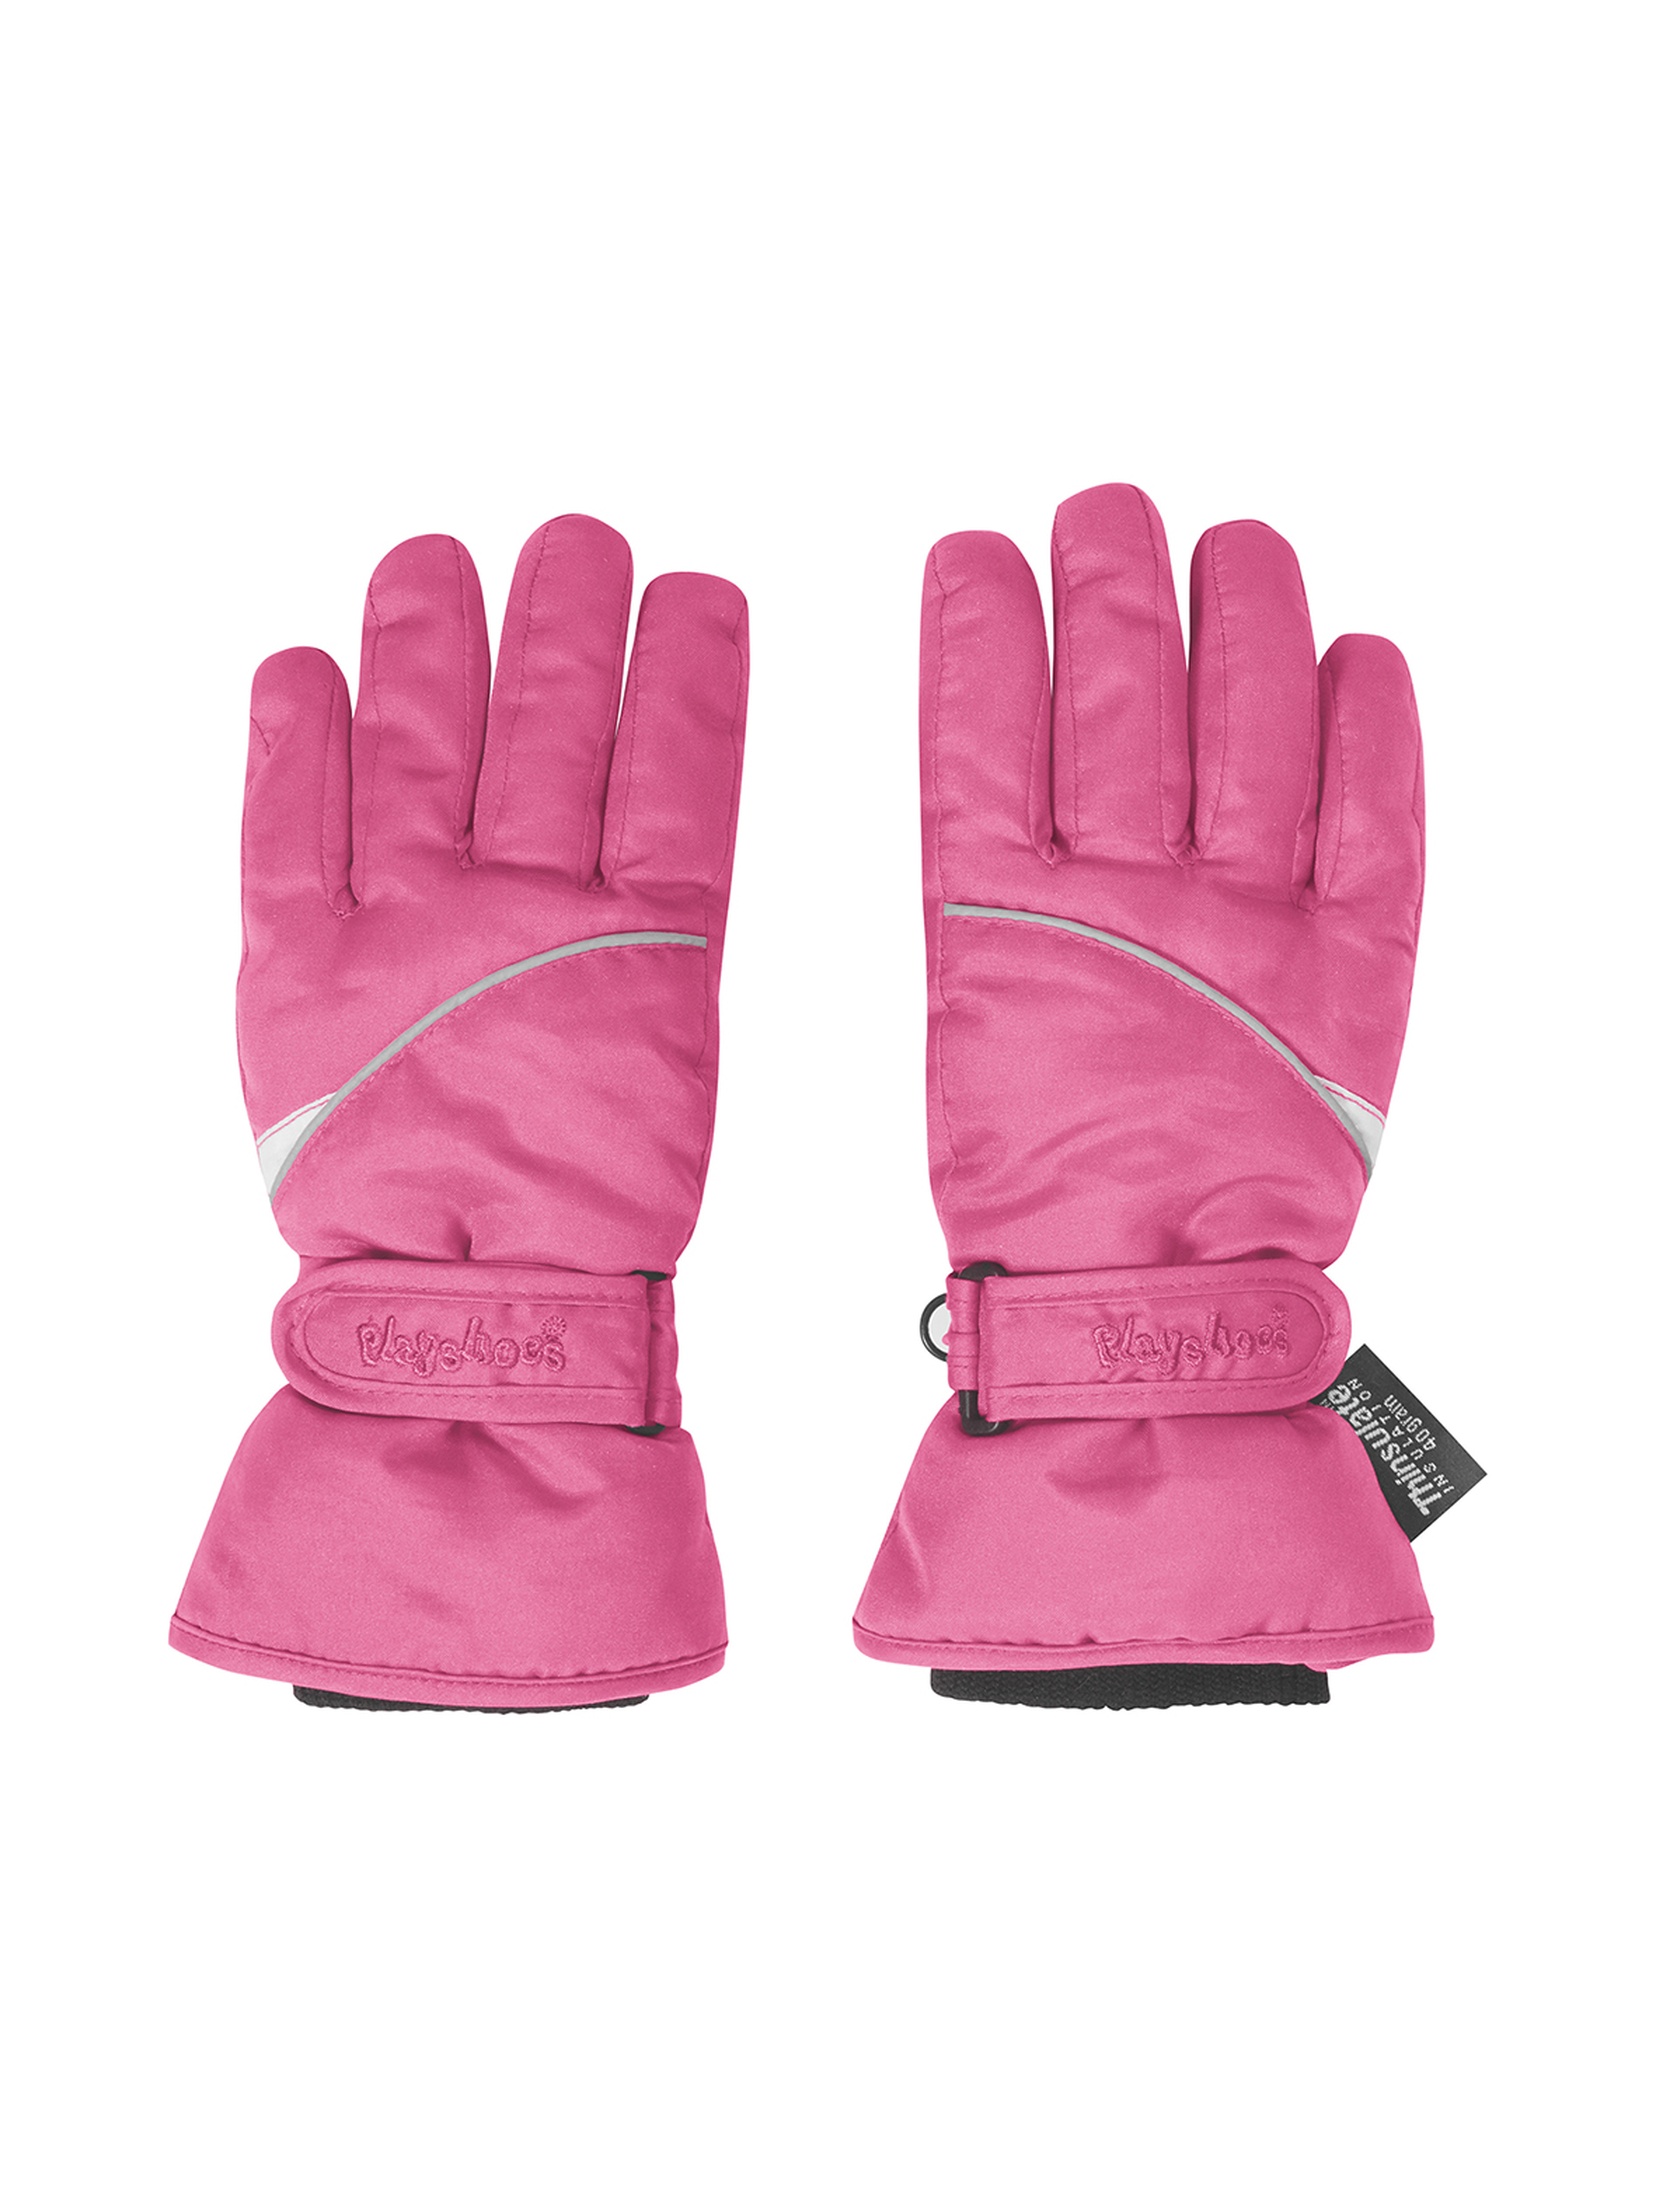 Rękawiczki zimowe  dla dziewczynki różowe